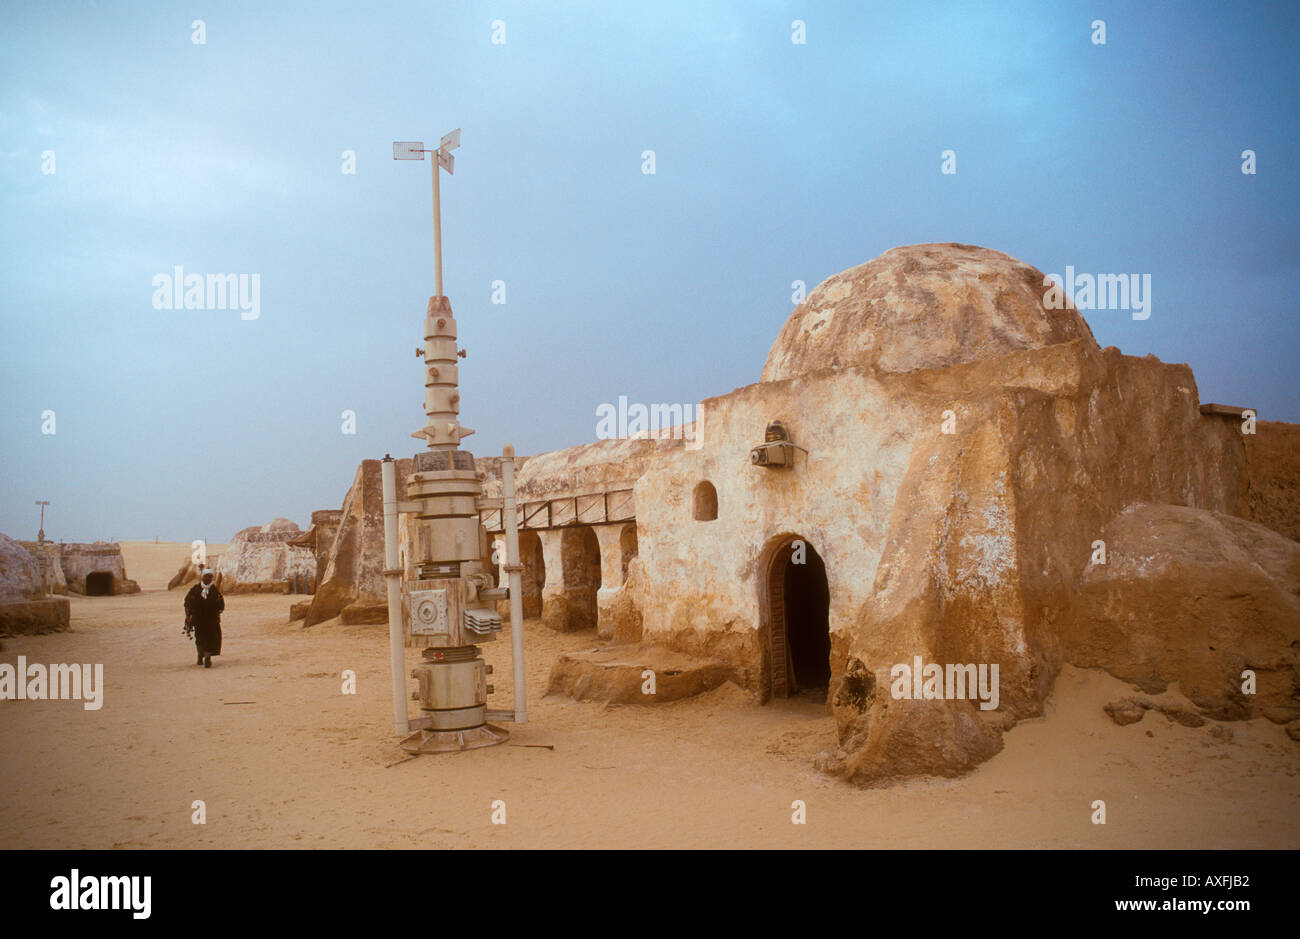 L'homme arabe marche dans le reste de la série Star Wars maintenant une attraction touristique dans le désert Tunisie Afrique Banque D'Images